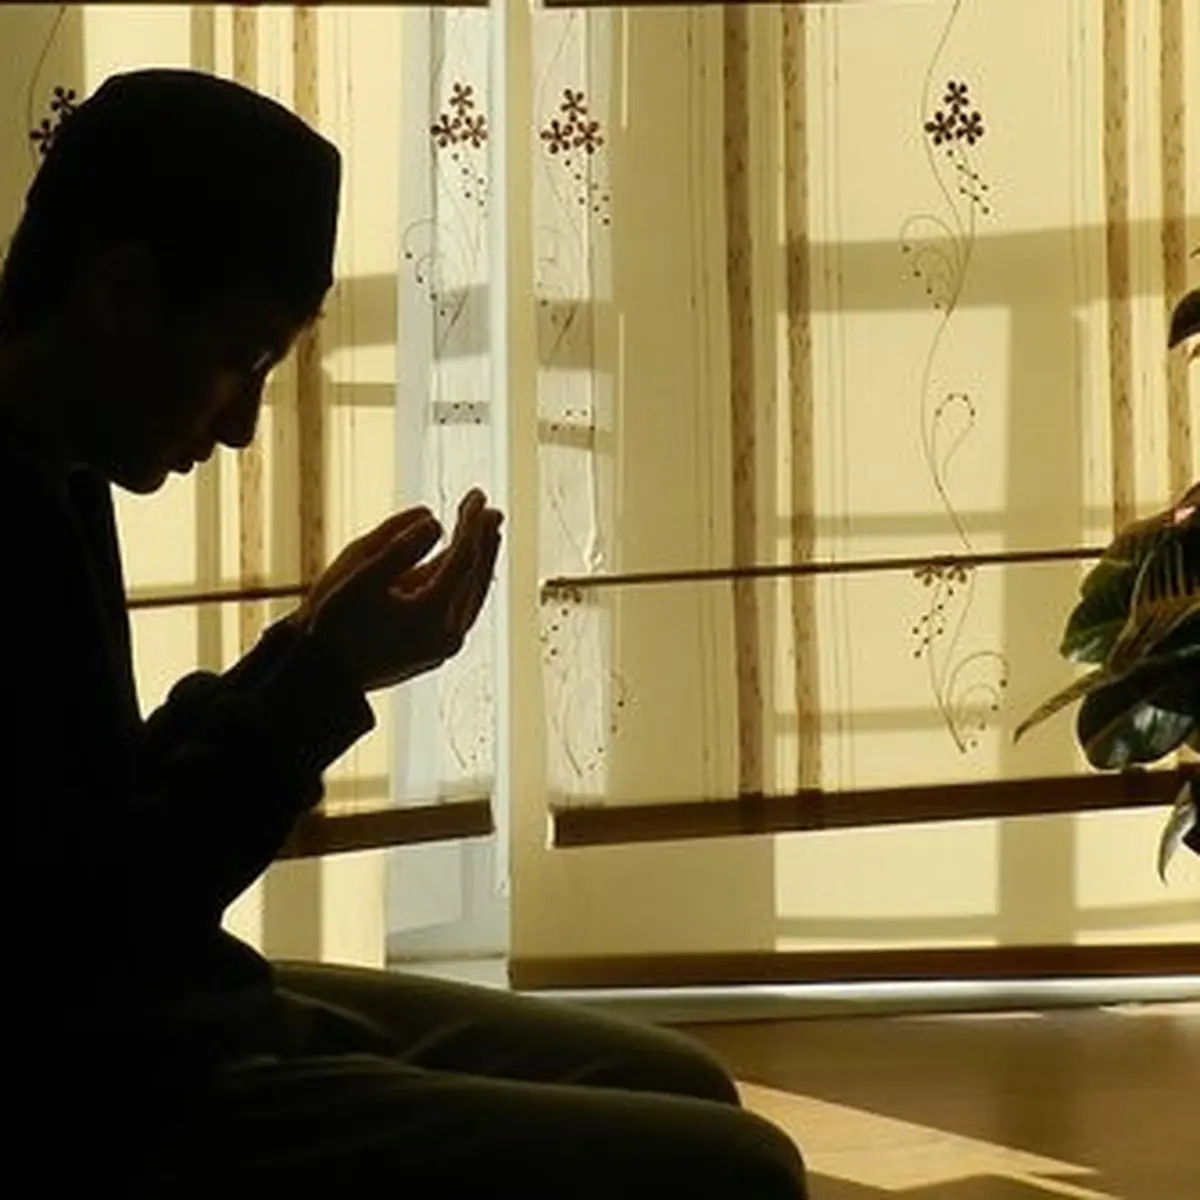 Doa Memohon Ampunan, Dibaca Setelah Sholat Wajib - Islami